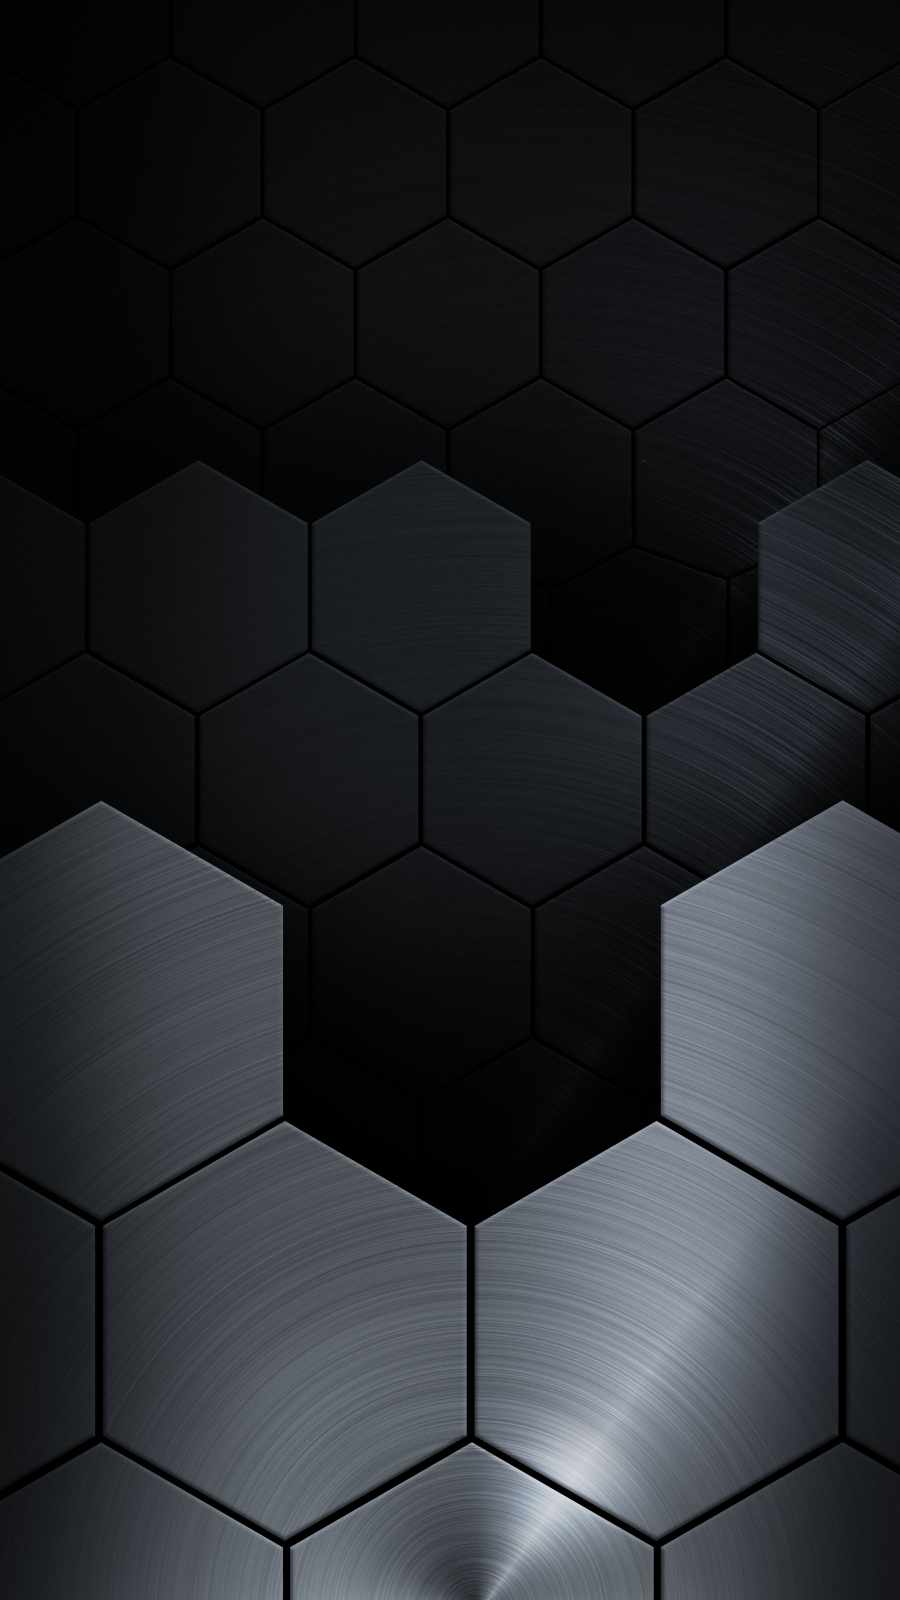 Metal Hexagon IPhone Wallpaper  IPhone Wallpapers